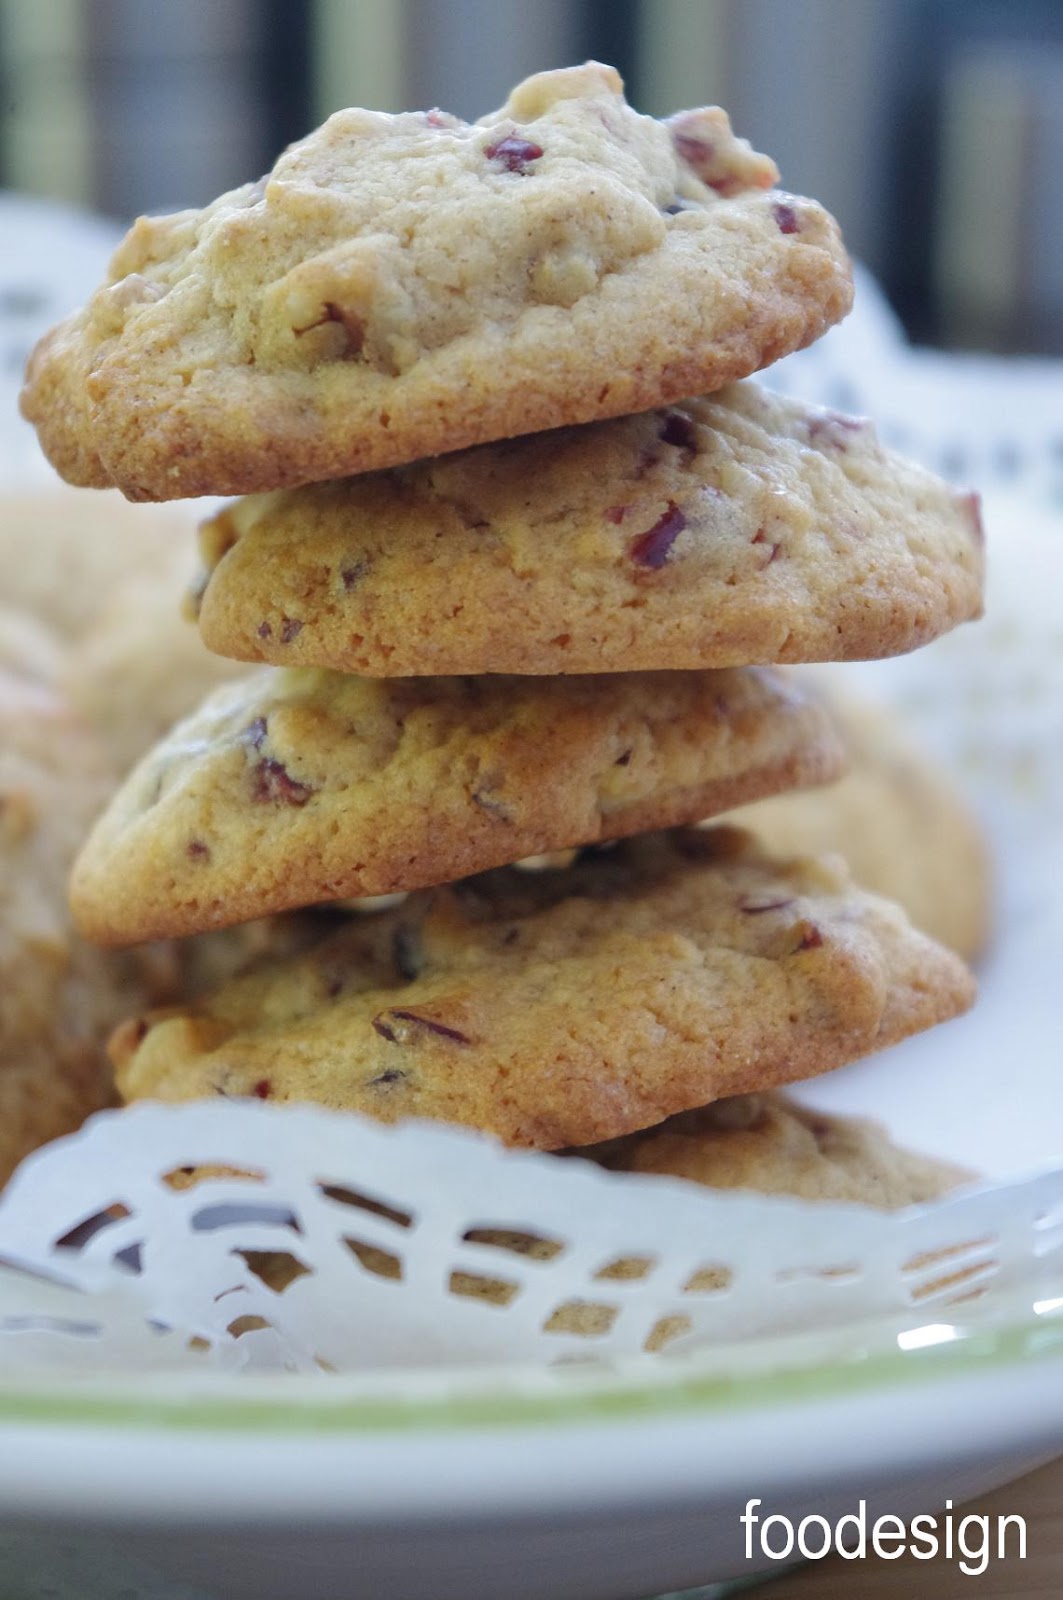 foodesign: cranberry walnut cookies